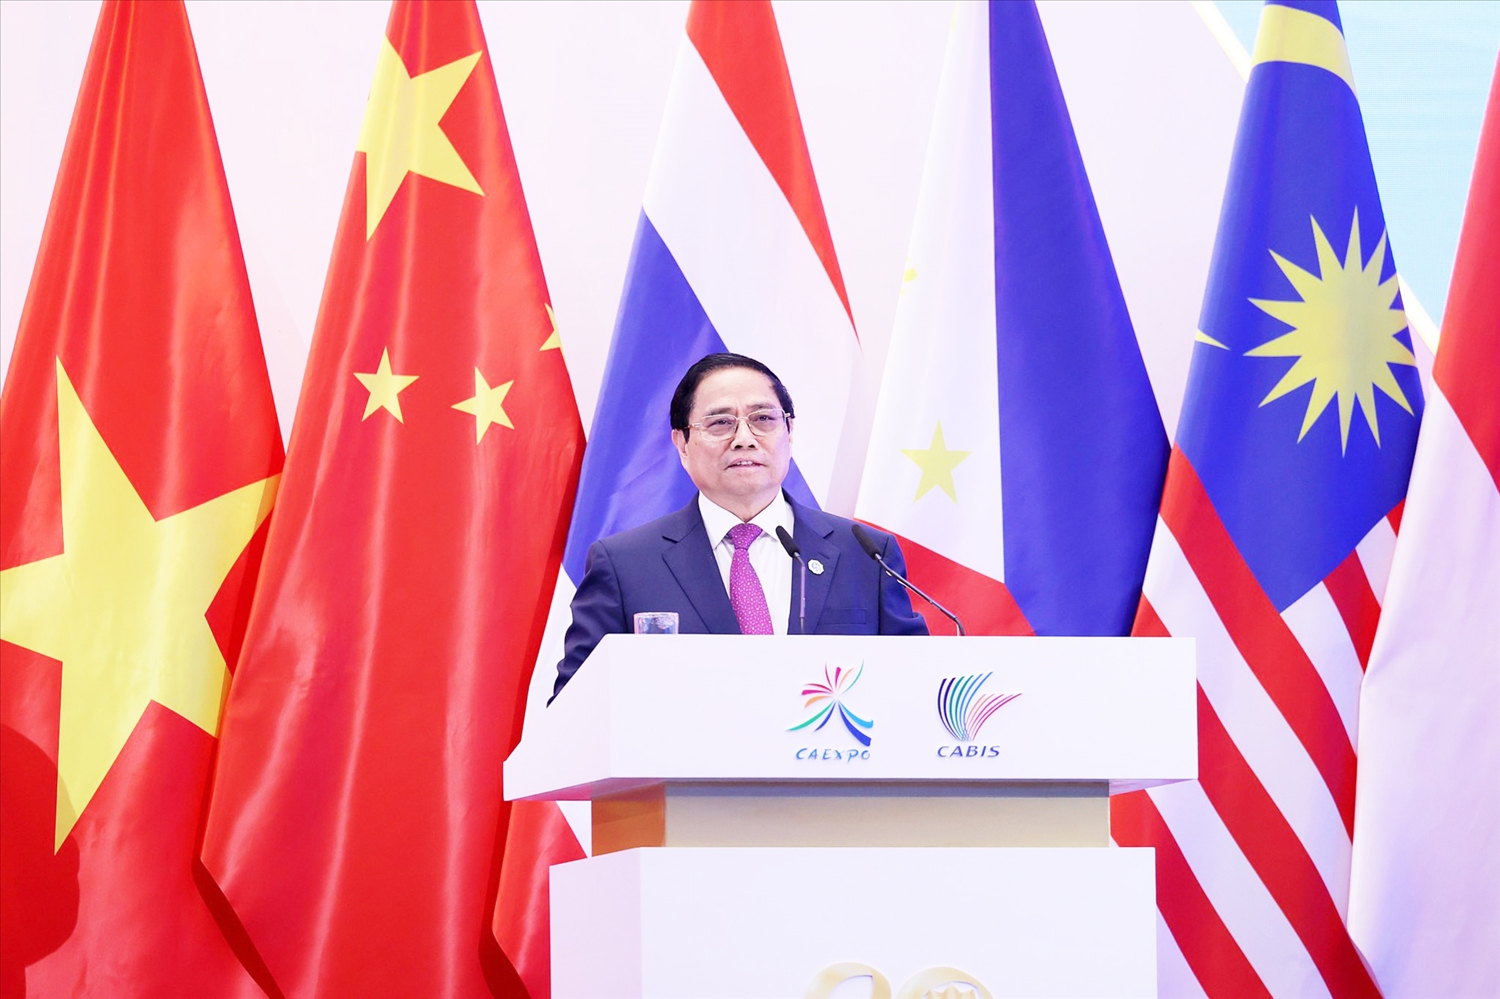 Thủ tướng Chính phủ Việt Nam Phạm Minh Chính phát biểu tại Lễ khai mạc CAEXPO và CABIS 2023 - Ảnh: VGP/Nhật Bắc